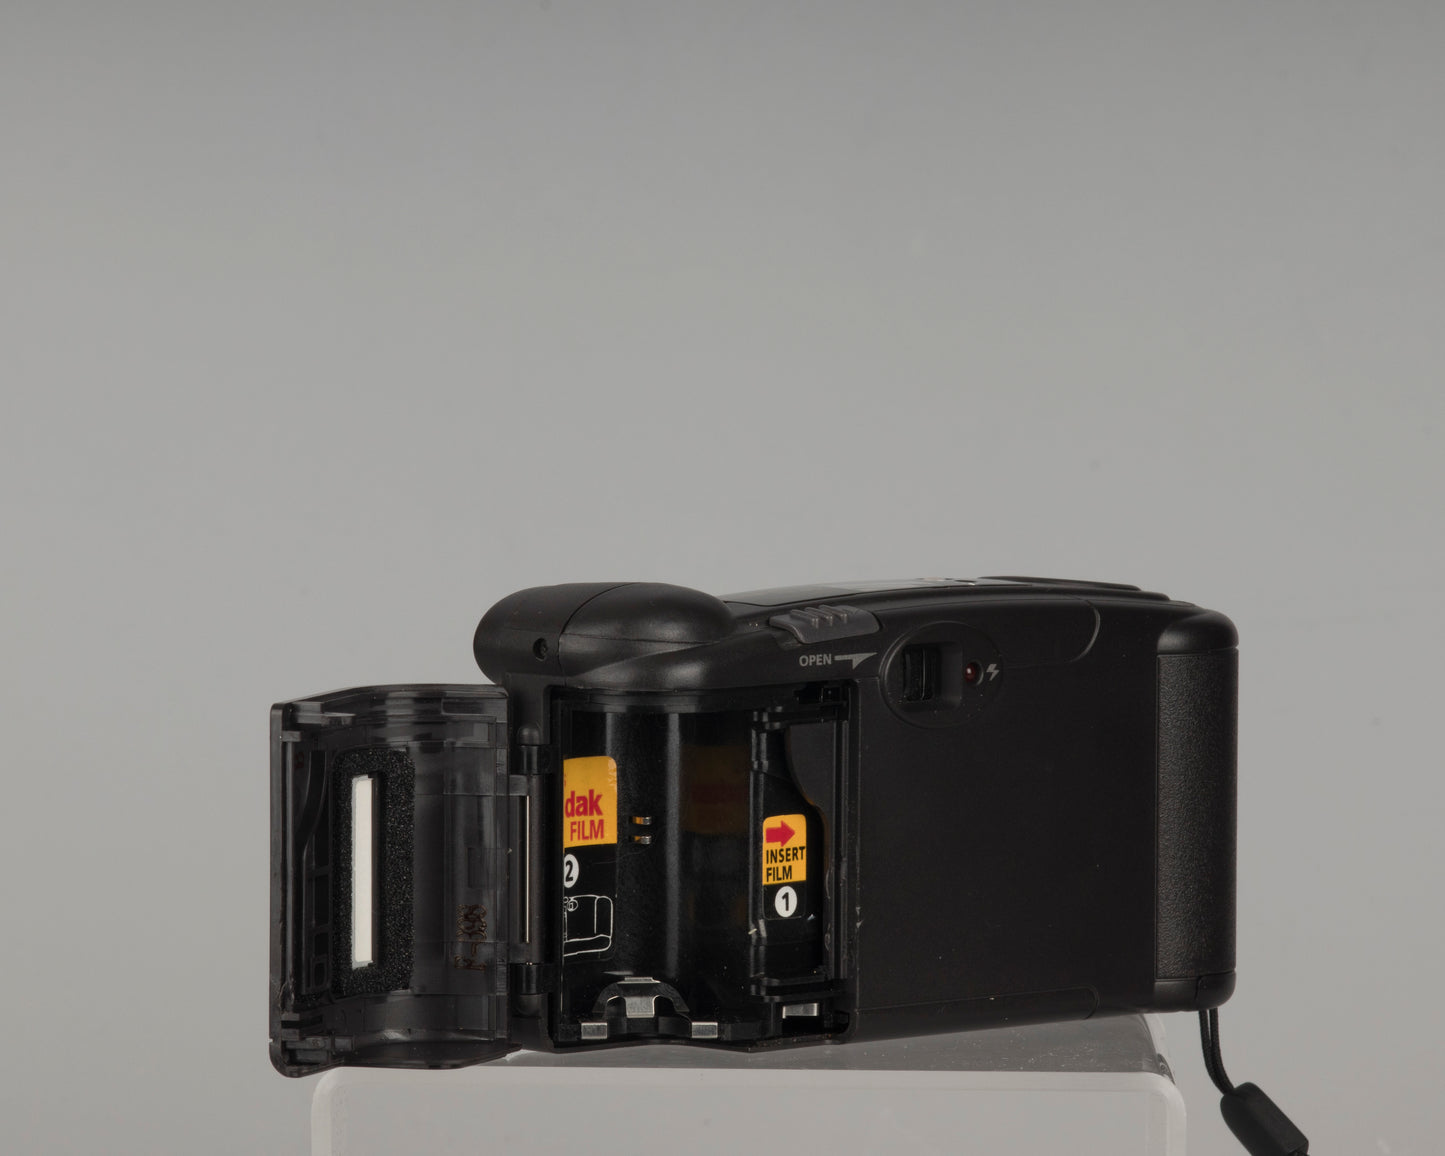 Appareil photo Kodak KE40 Easyload 35 mm avec étui